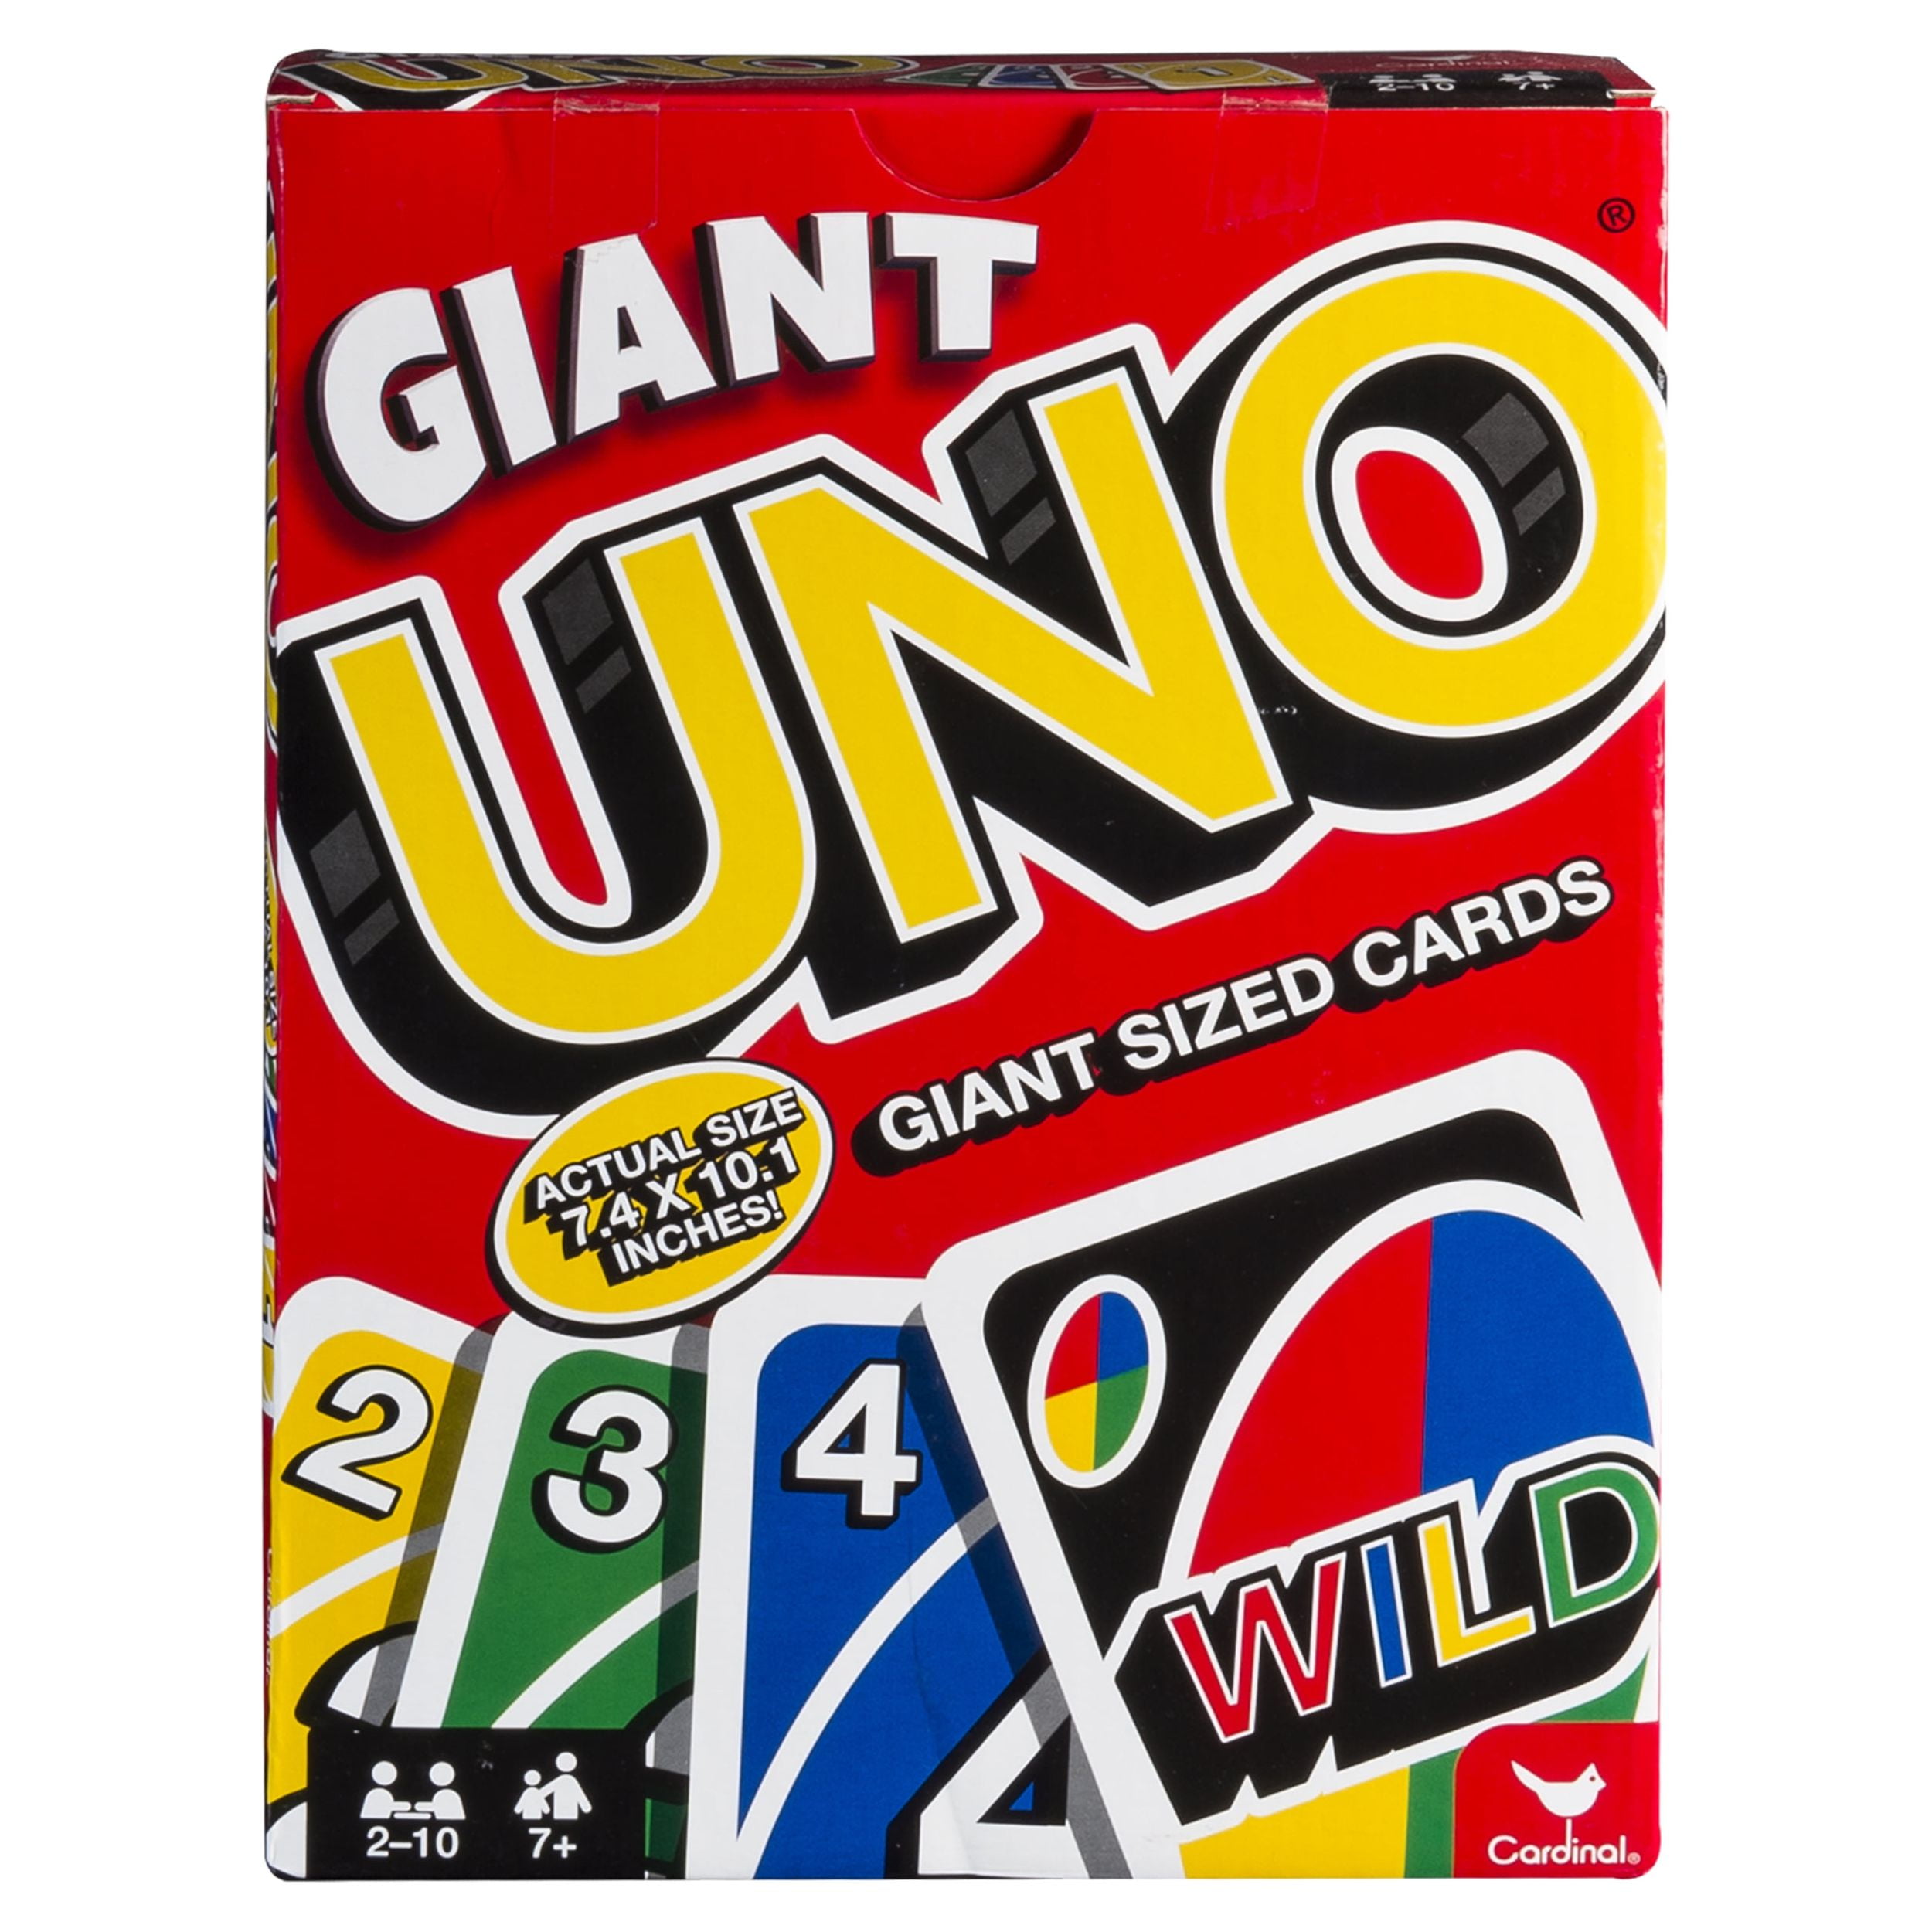 Achetez Uno Giant (Géant) - Jeu de société - Mattel - Addict'O Jeu